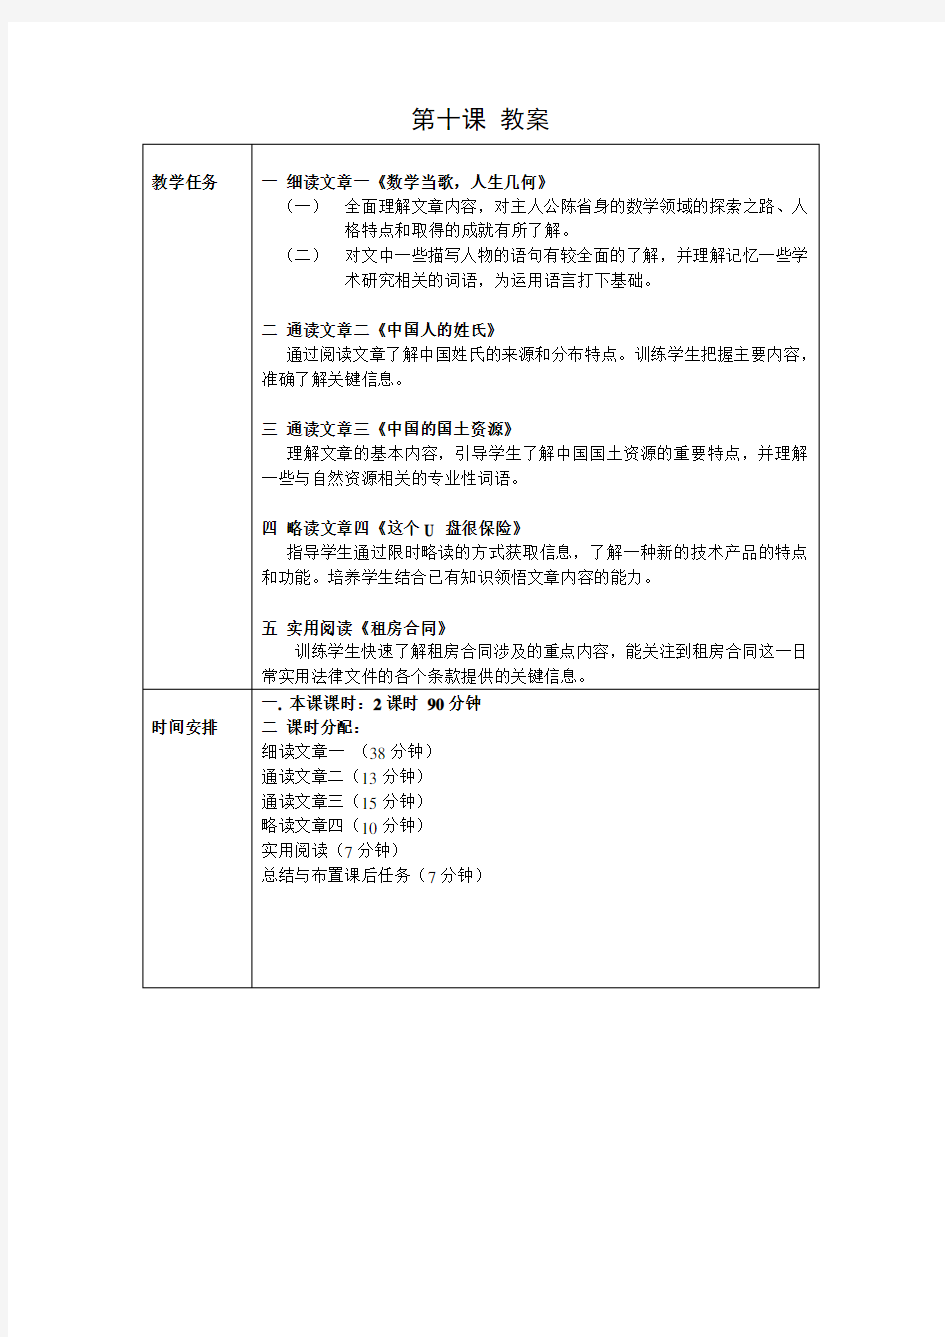 【对外汉语】发展汉语高级阅读(一)第10课,附答案